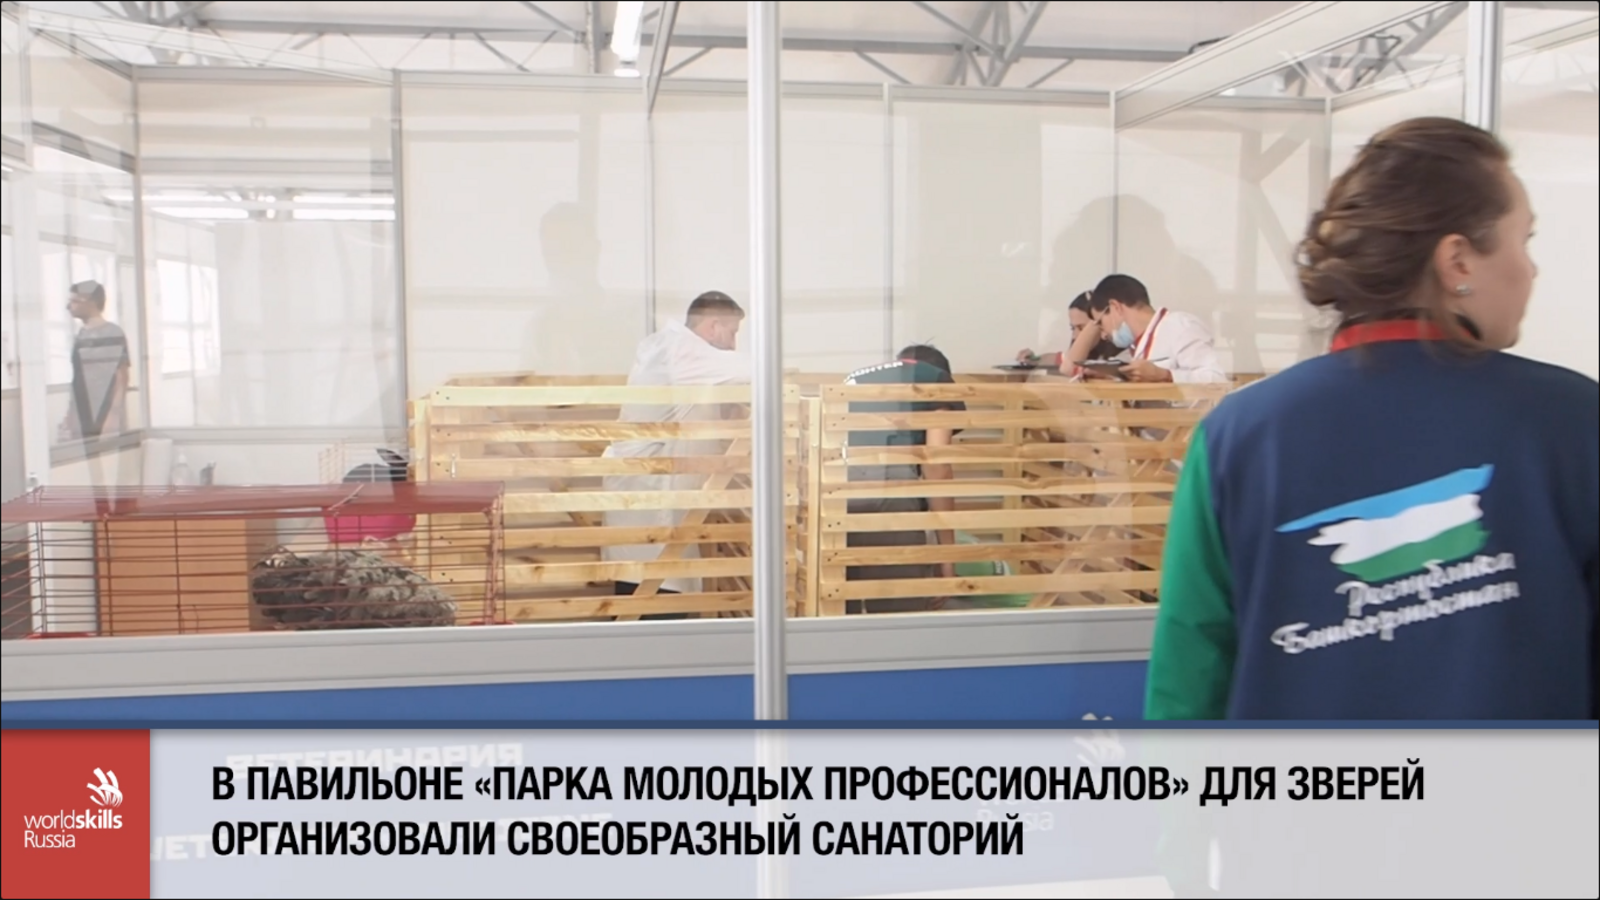 В Башкирии четвероногие и пернатые друзья стали помощниками конкурсантов в компетенции "Ветеринария"